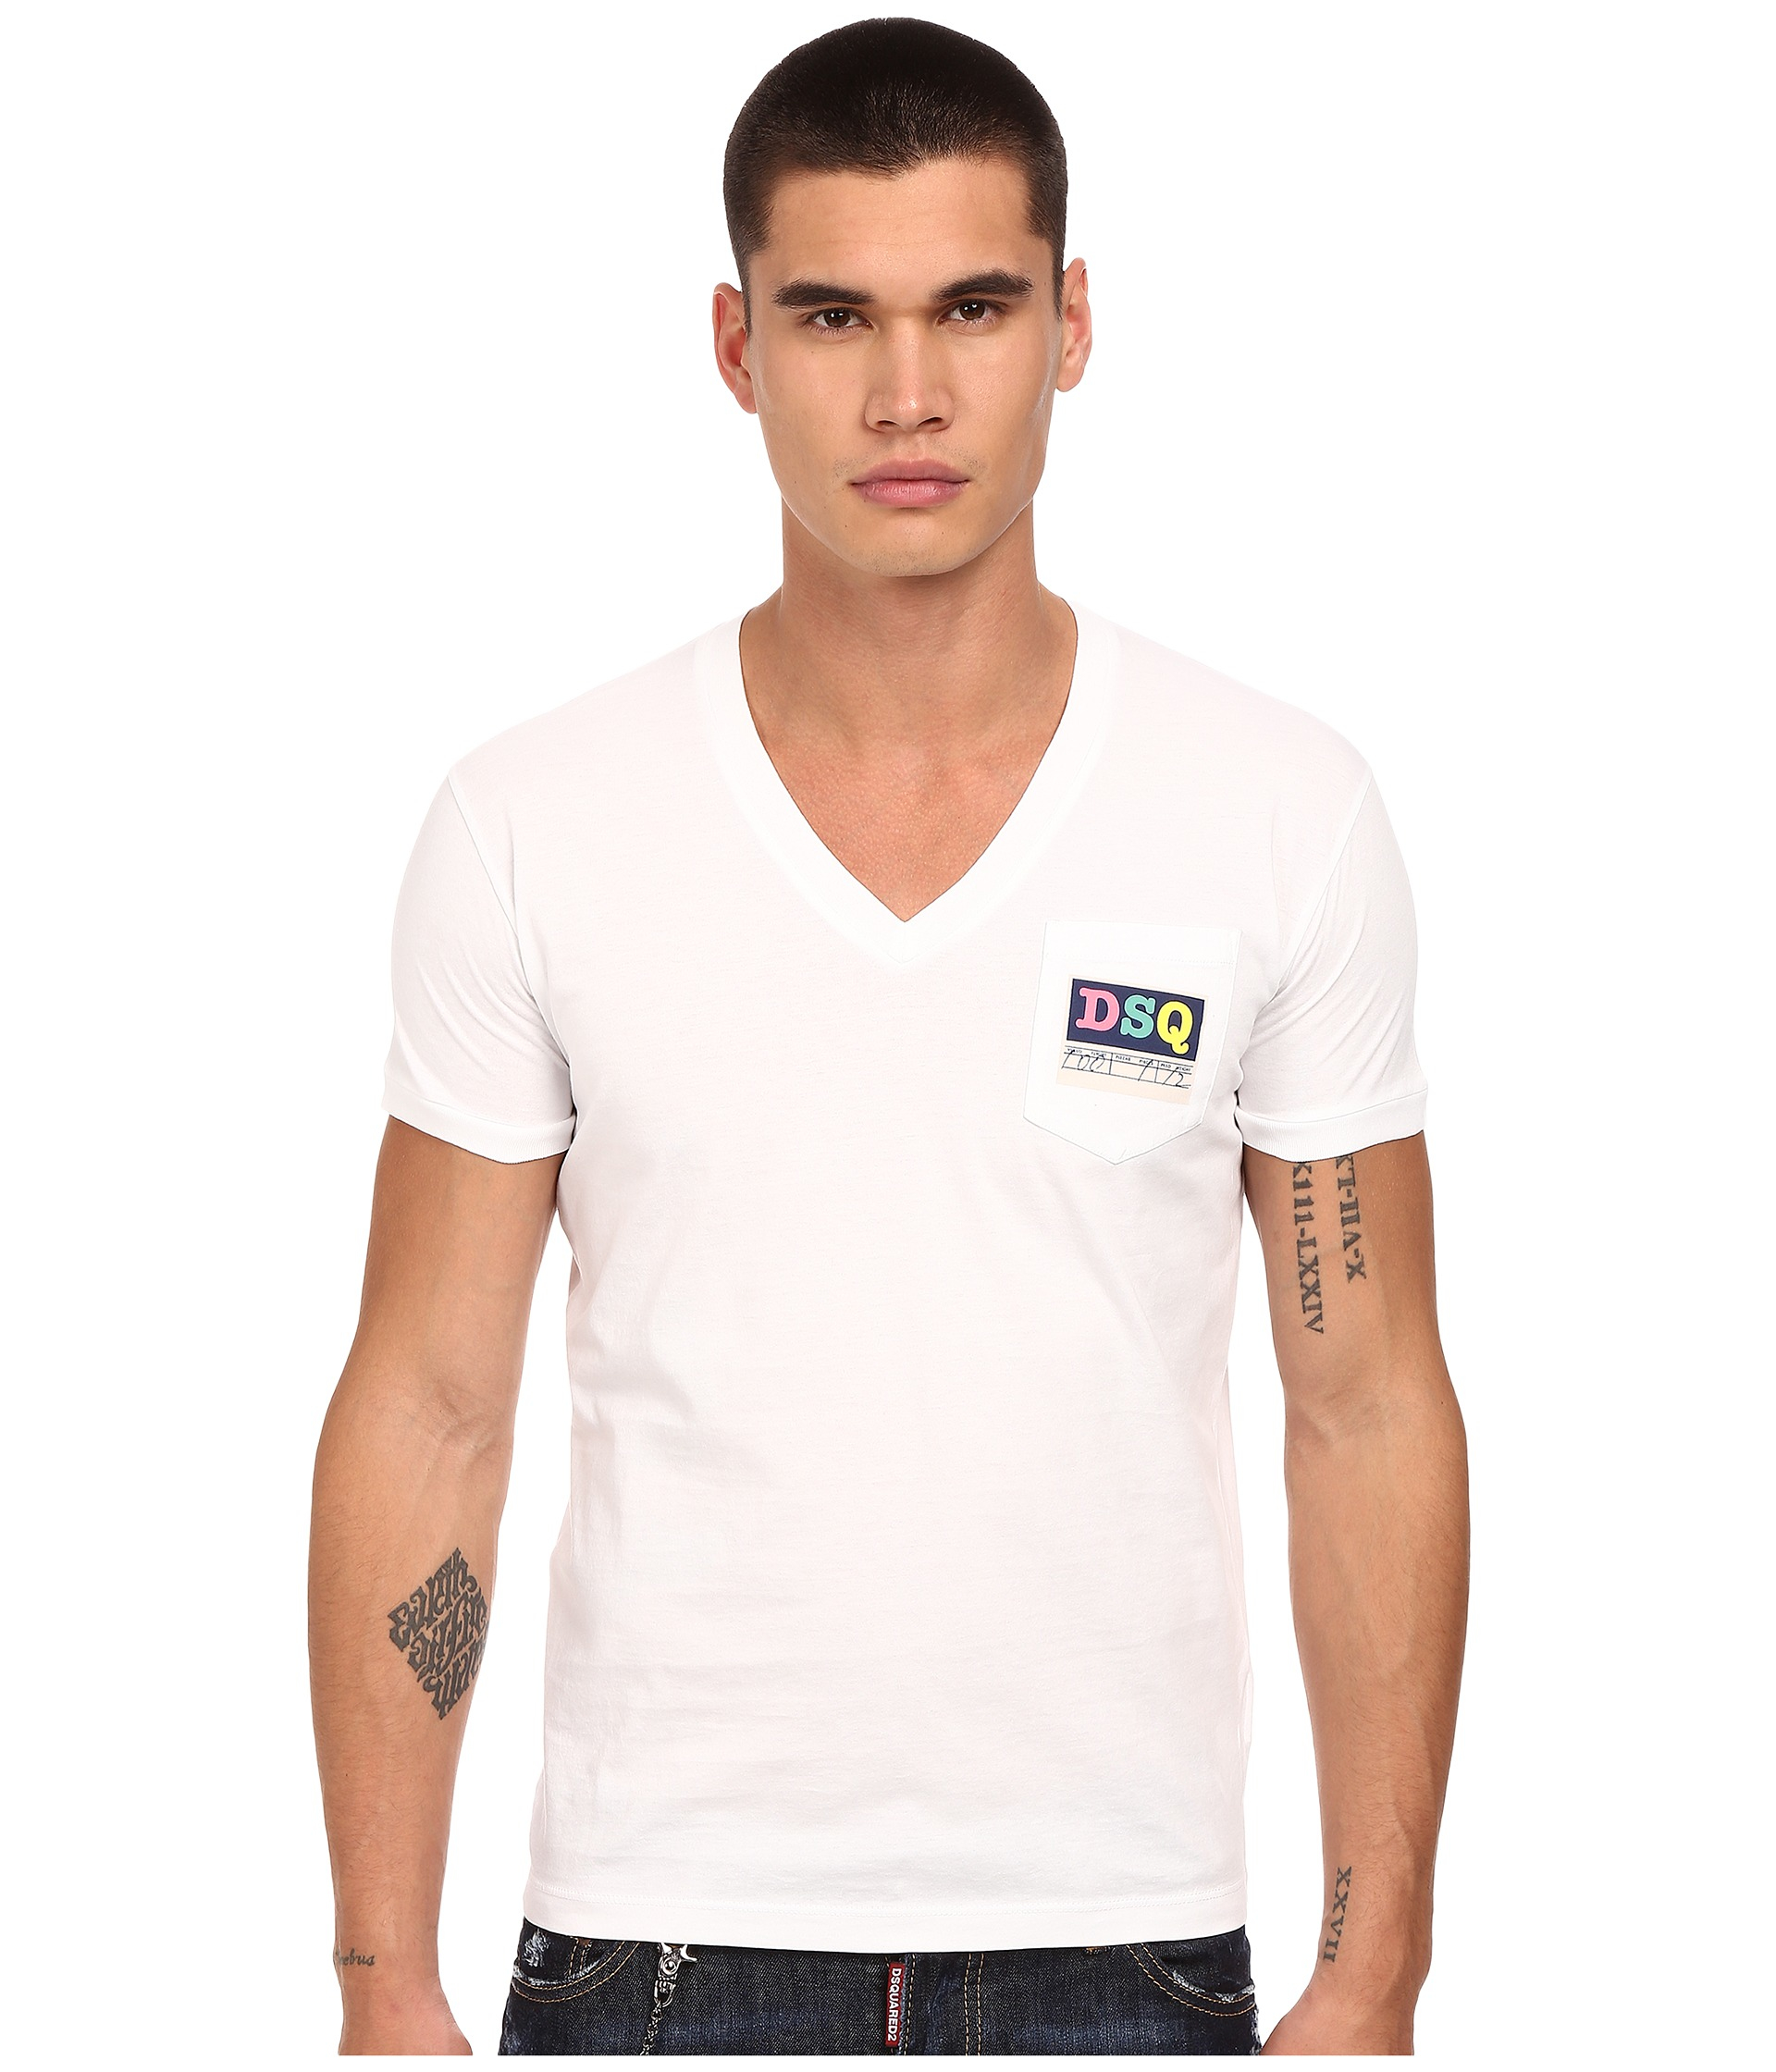 DSquared² Logo Pocket V-neck T-shirt in White for Men - Lyst